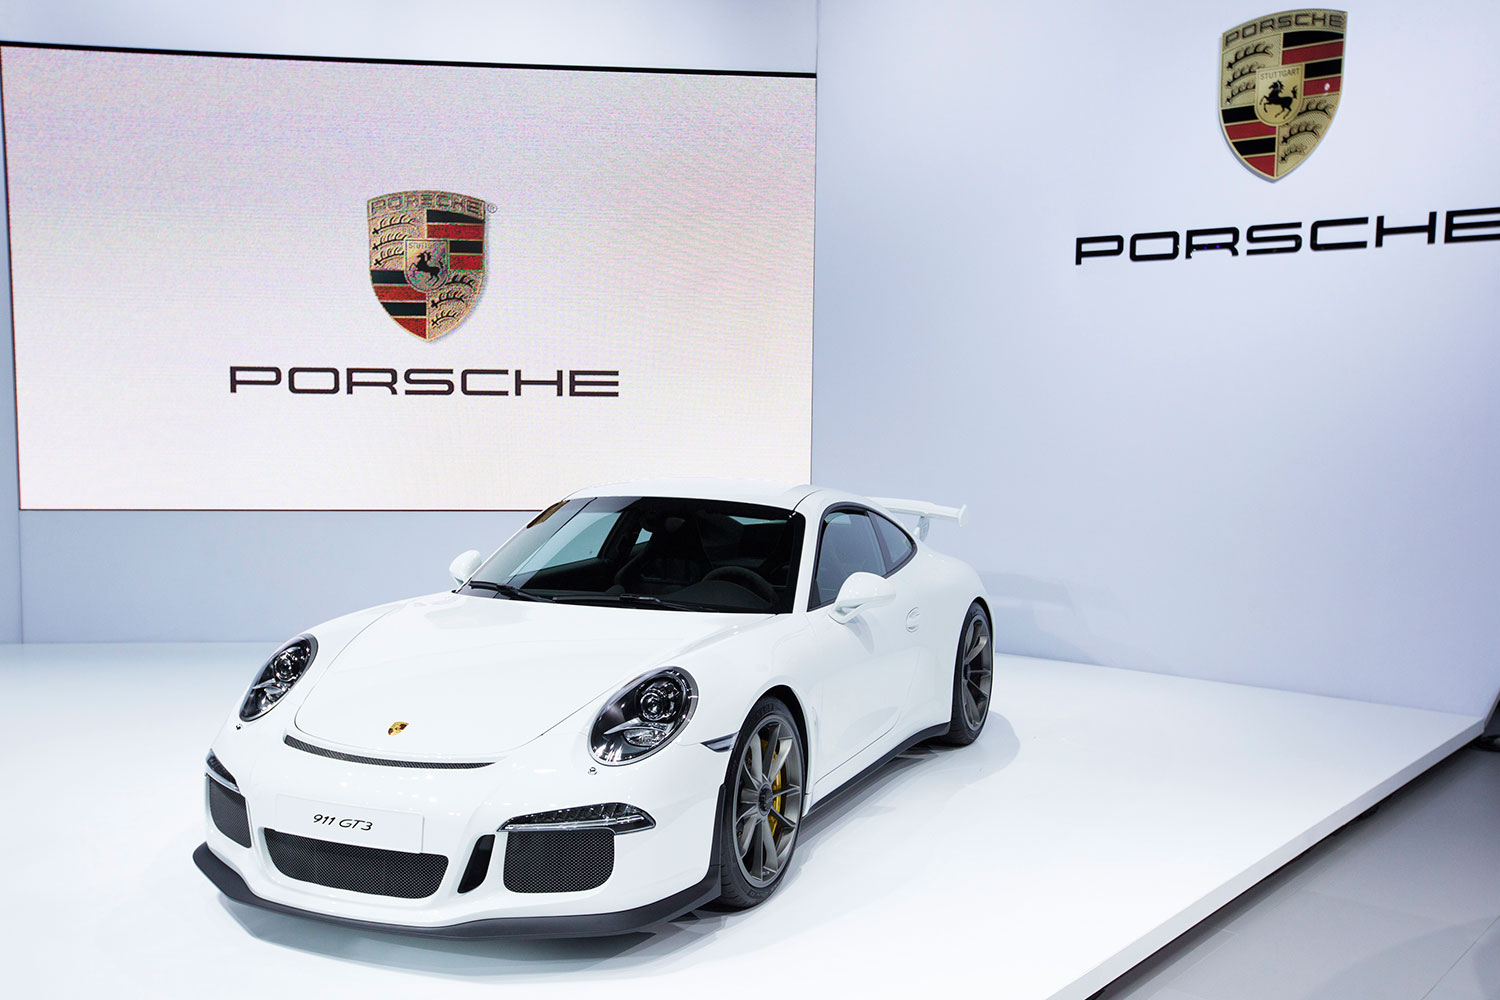 Porsche llama a revisión a 785 unidades de su último modelo por riesgo de que se incendie